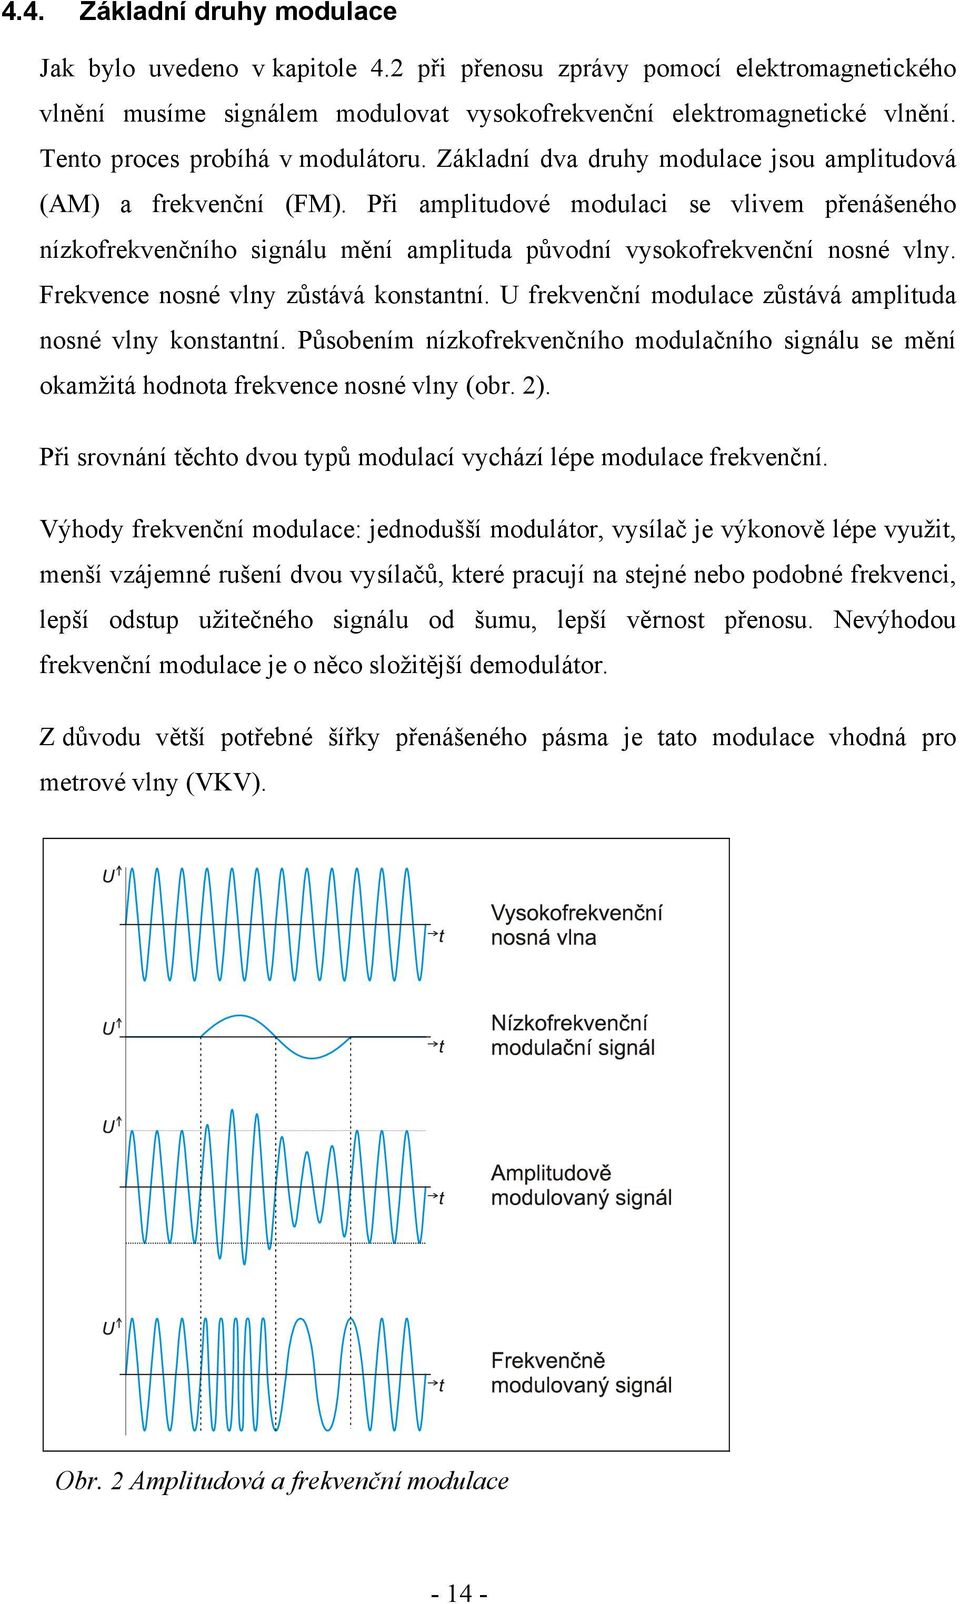 Při amplitudové modulaci se vlivem přenášeného nízkofrekvenčního signálu mění amplituda původní vysokofrekvenční nosné vlny. Frekvence nosné vlny zůstává konstantní.